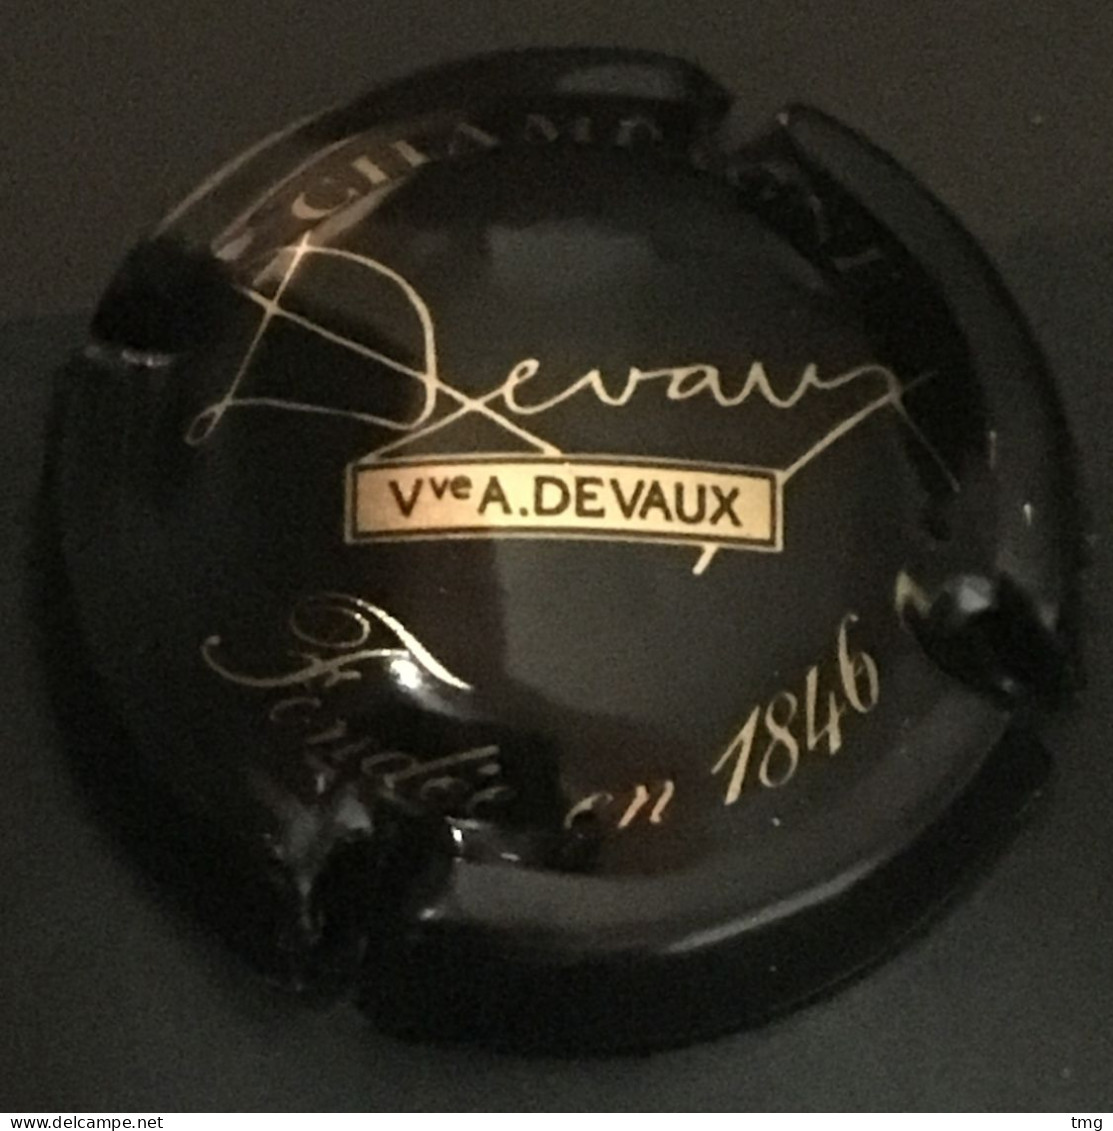 Gre 1 - Devaux, Noir Et Or, Vve A. Devaux, Fondée En 1846 (côte 1 Euro) Capsule De Champagne - Devaux